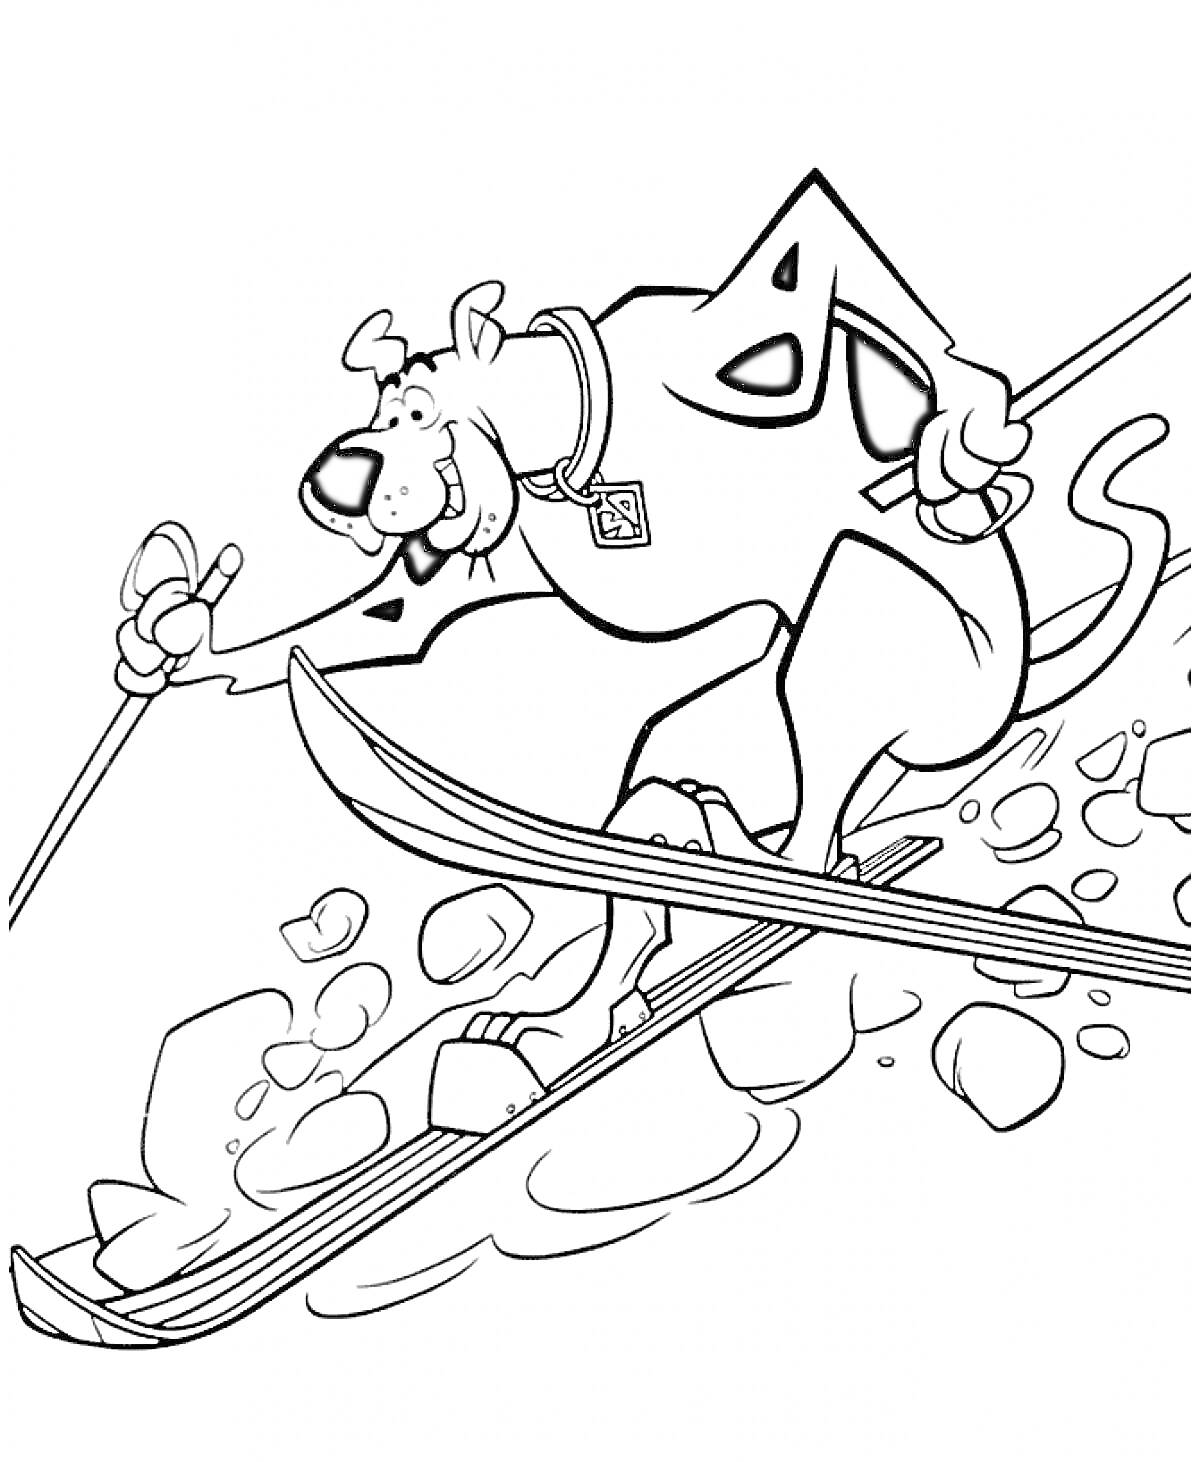 Раскраска Скуби Ду катается на лыжах и объезжает камни со специальным лыжным костюмом